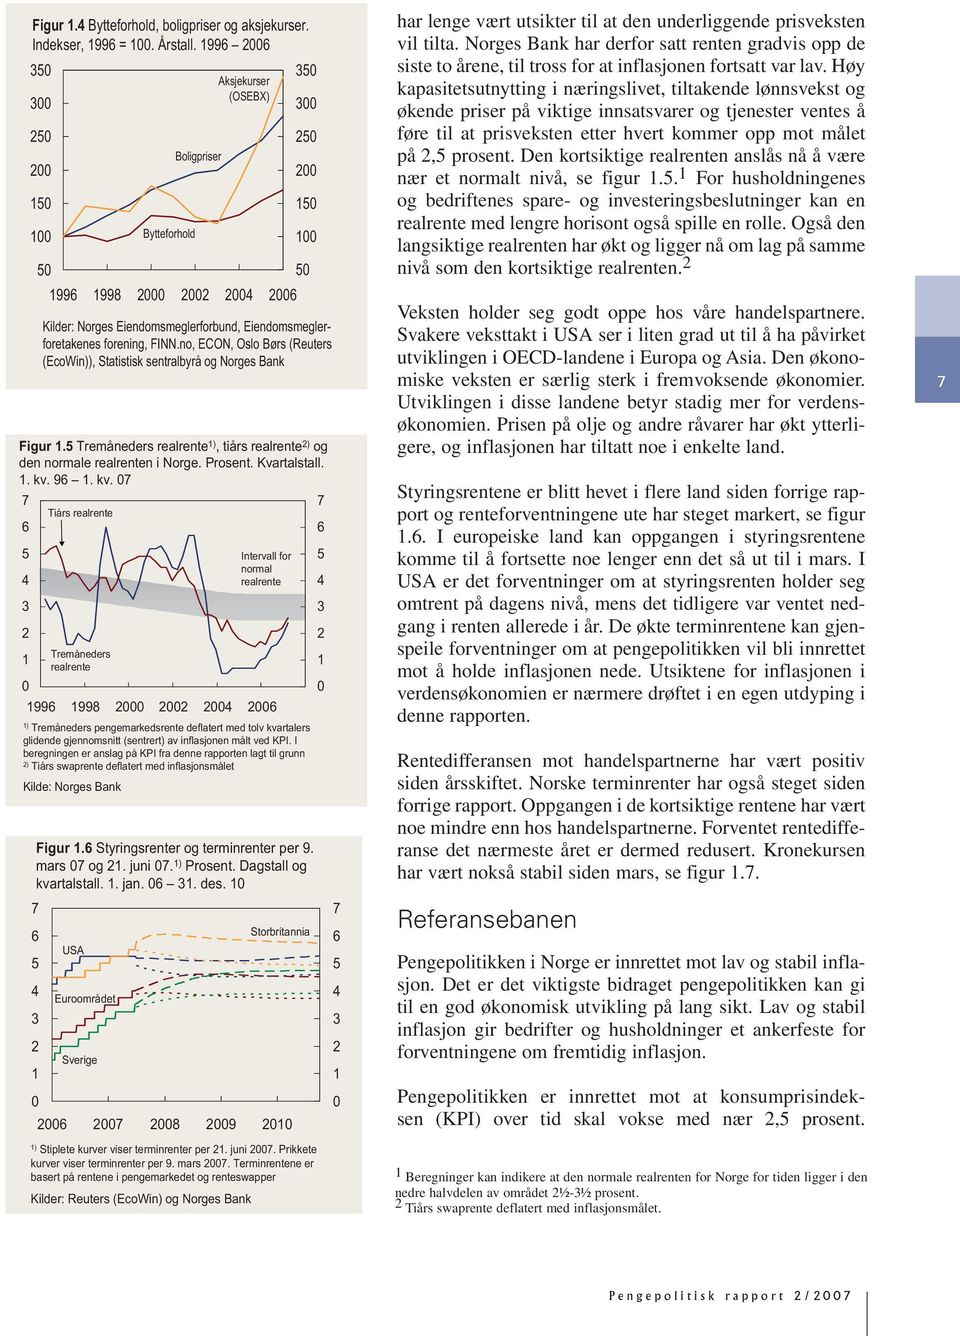 I beregningen er anslag på KPI fra denne rapporten lagt til grunn ) Tiårs swaprente deflatert med inflasjonsmålet Kilde: Norges Bank Bytteforhold Boligpriser Aksjekurser (OSEBX) 99 99 Intervall for